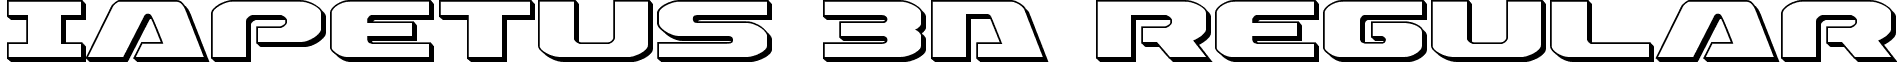 Iapetus 3D Regular font - Iapetus 3D.ttf